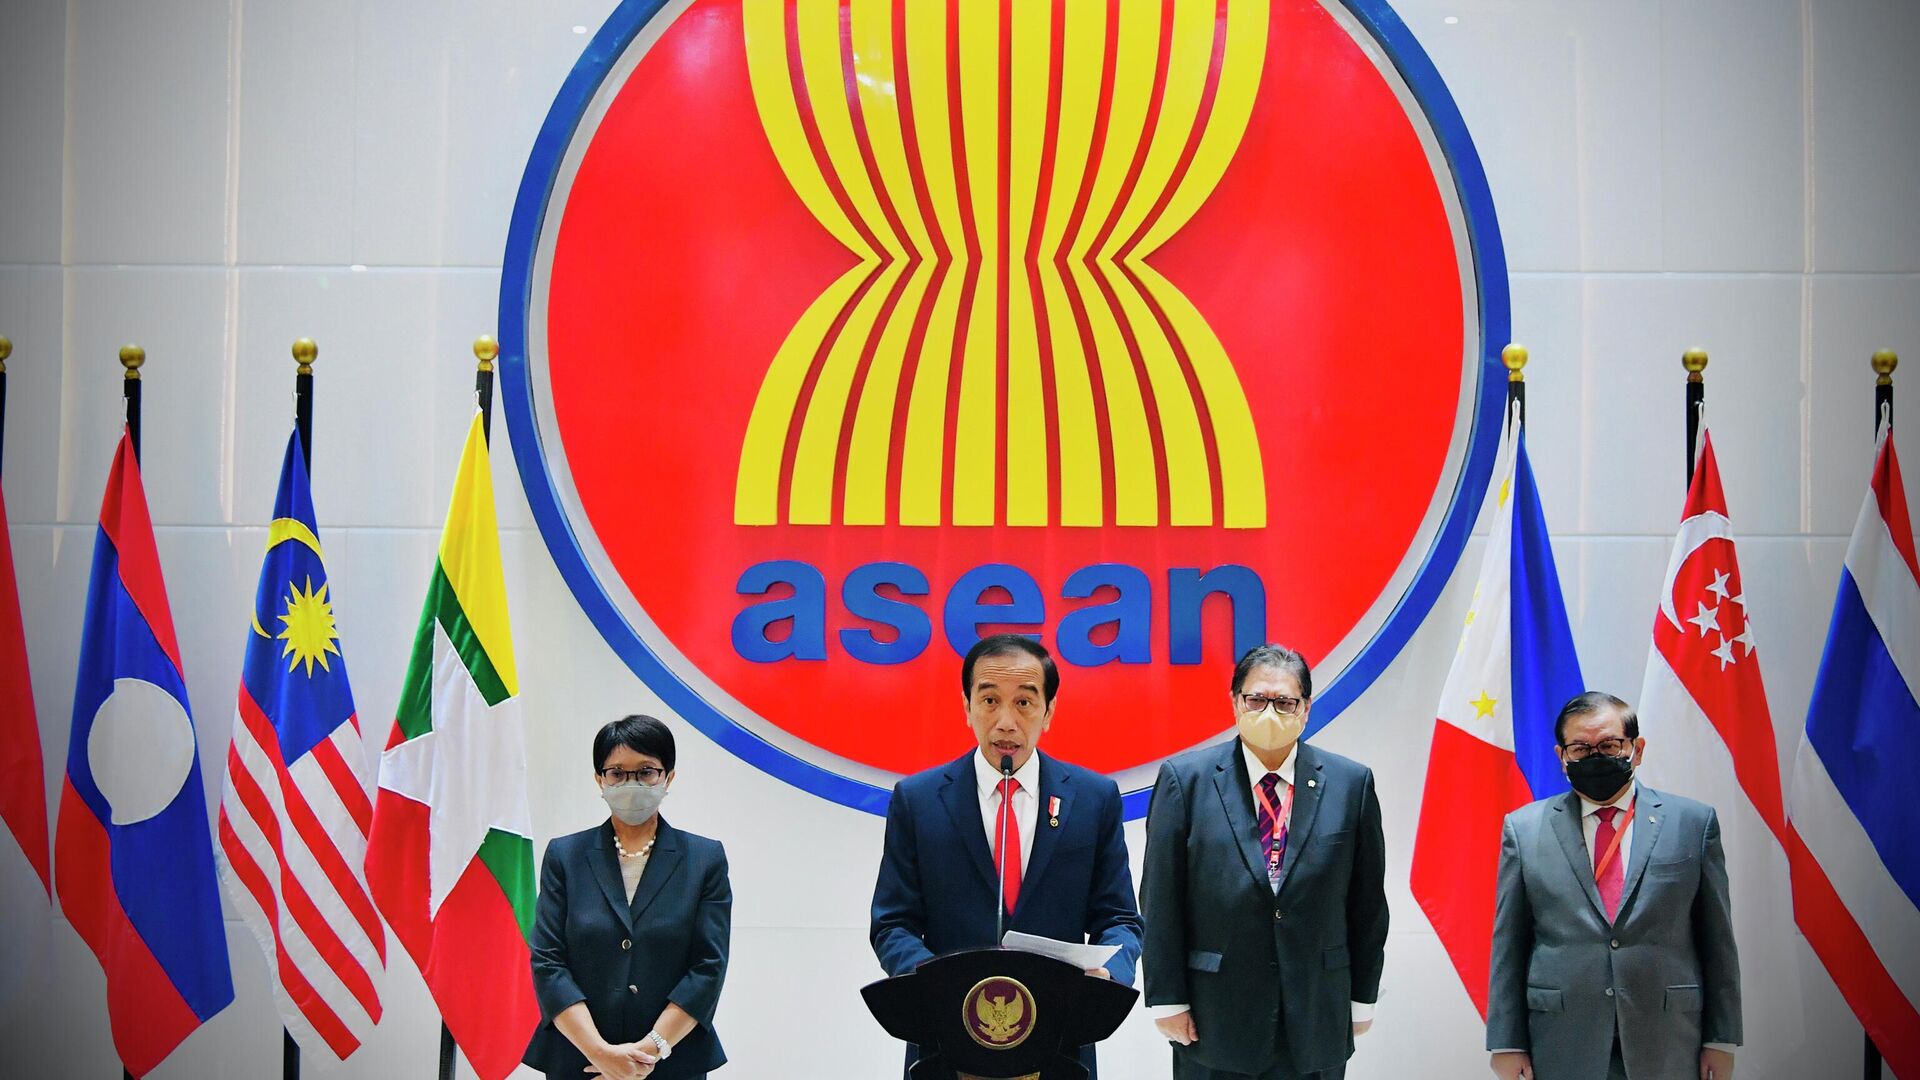 Tổng thống Indonesia Joko Widodo đưa ra một tuyên bố báo chí tại Hội nghị Cấp cao ASEAN tại Jakarta. - Sputnik Việt Nam, 1920, 08.08.2022